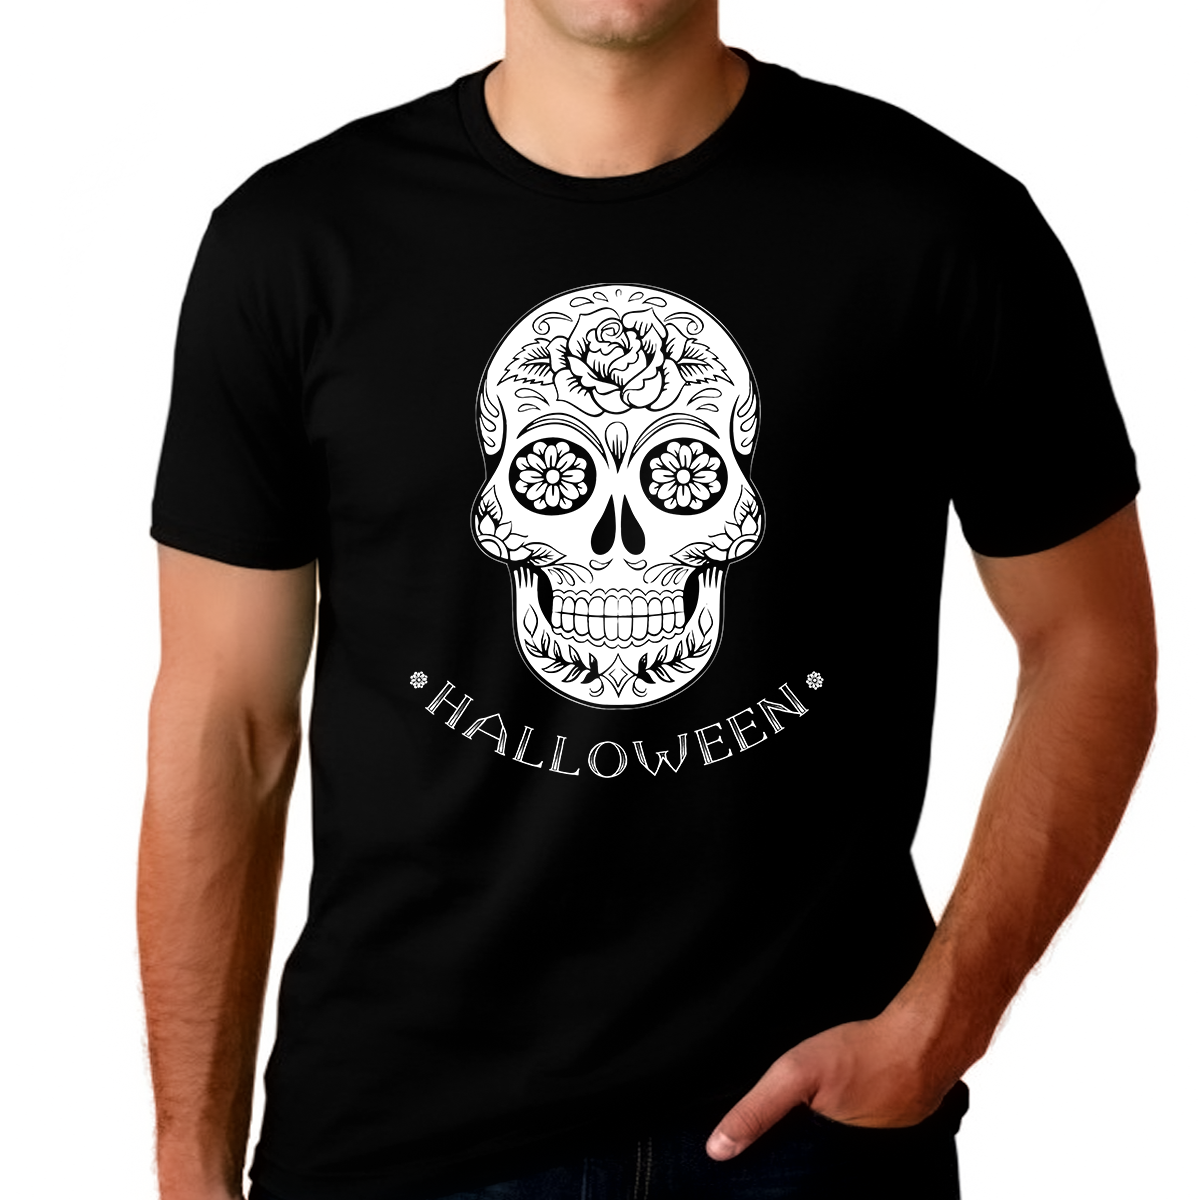 Big and Tall Funny Skeleton Shirt Halloween Shirts for Men Plus Size XL 2XL 3XL 4XL 5XL Halloween